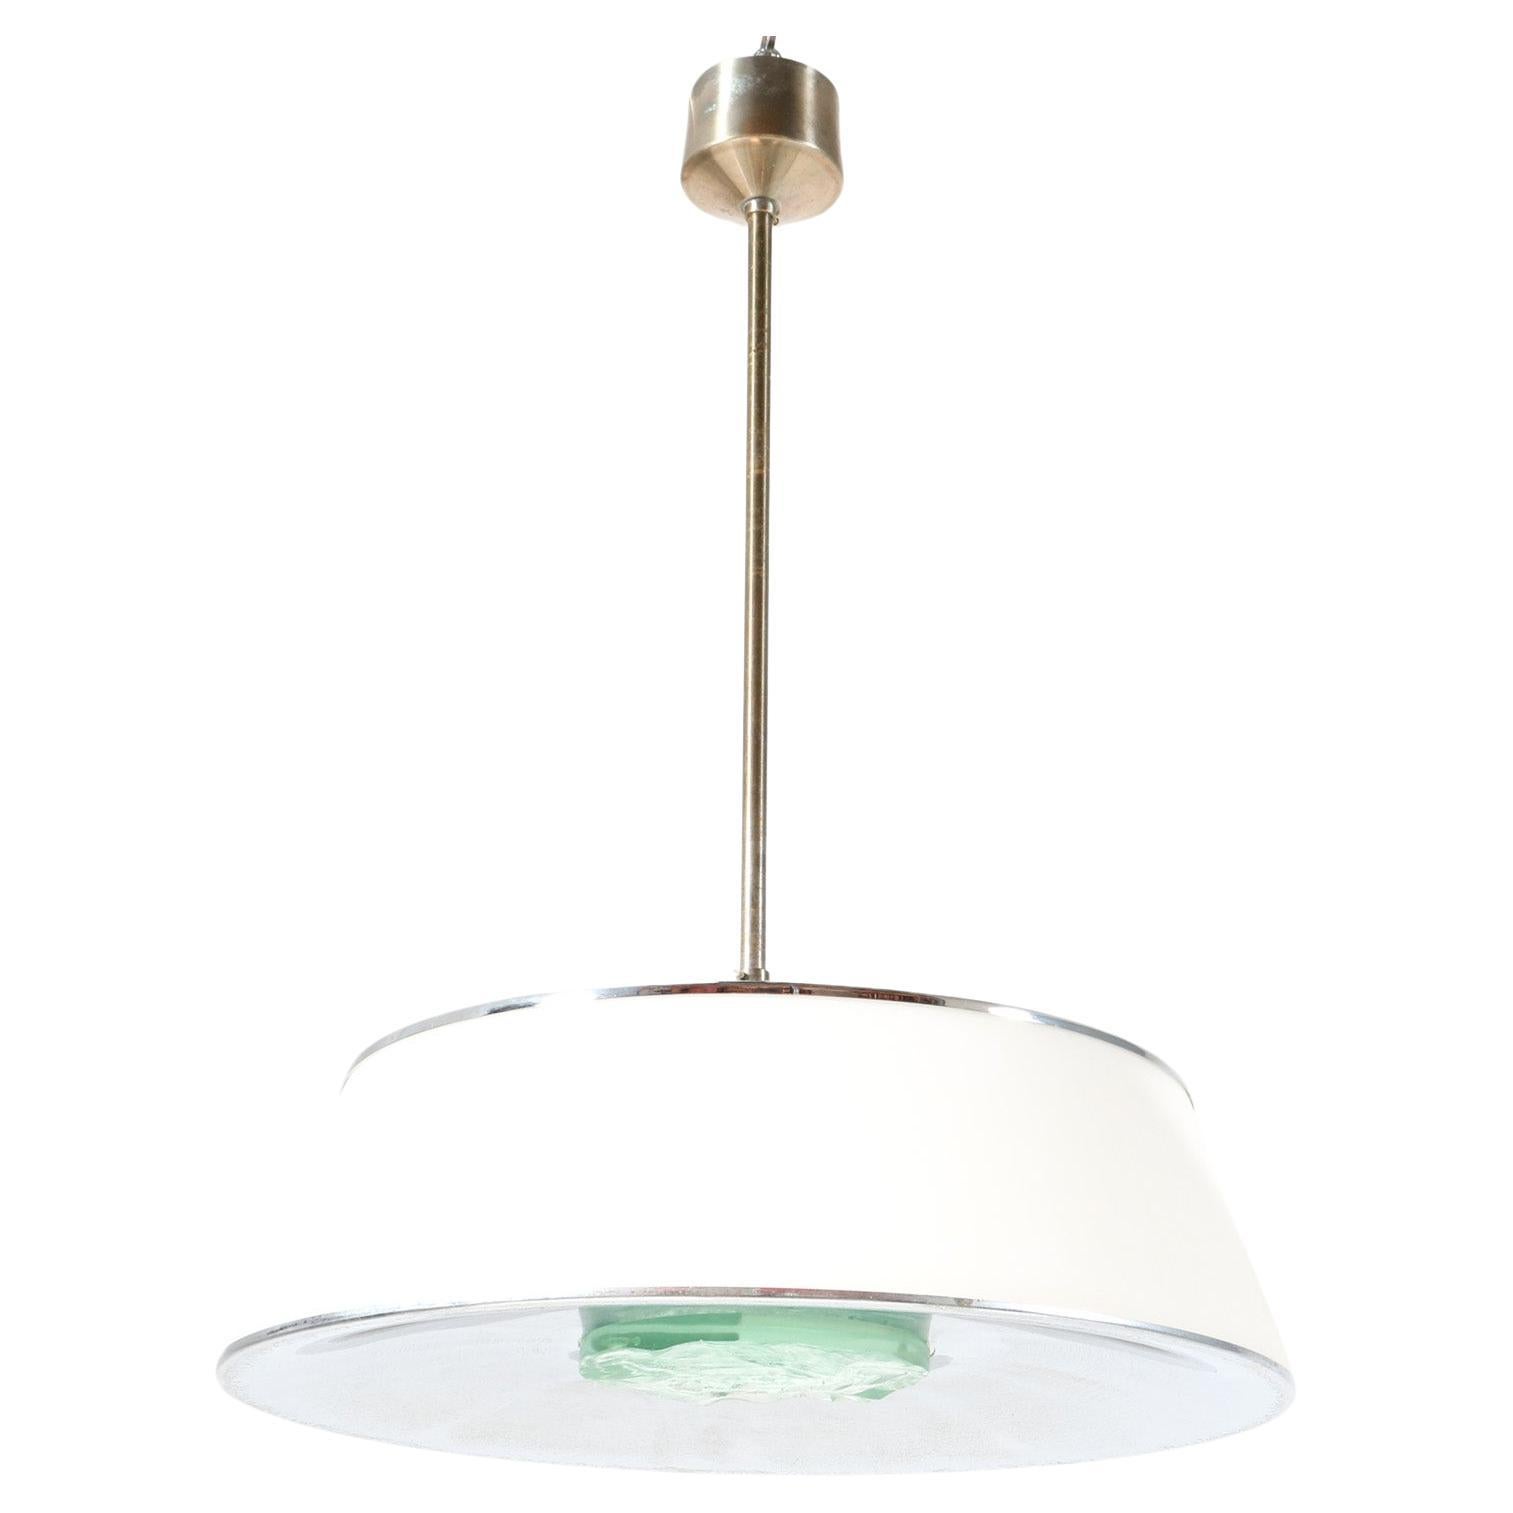 Lampe à suspension moderne du milieu du siècle dernier, modèle 2364, de Max Ingrand pour Fontana Arte